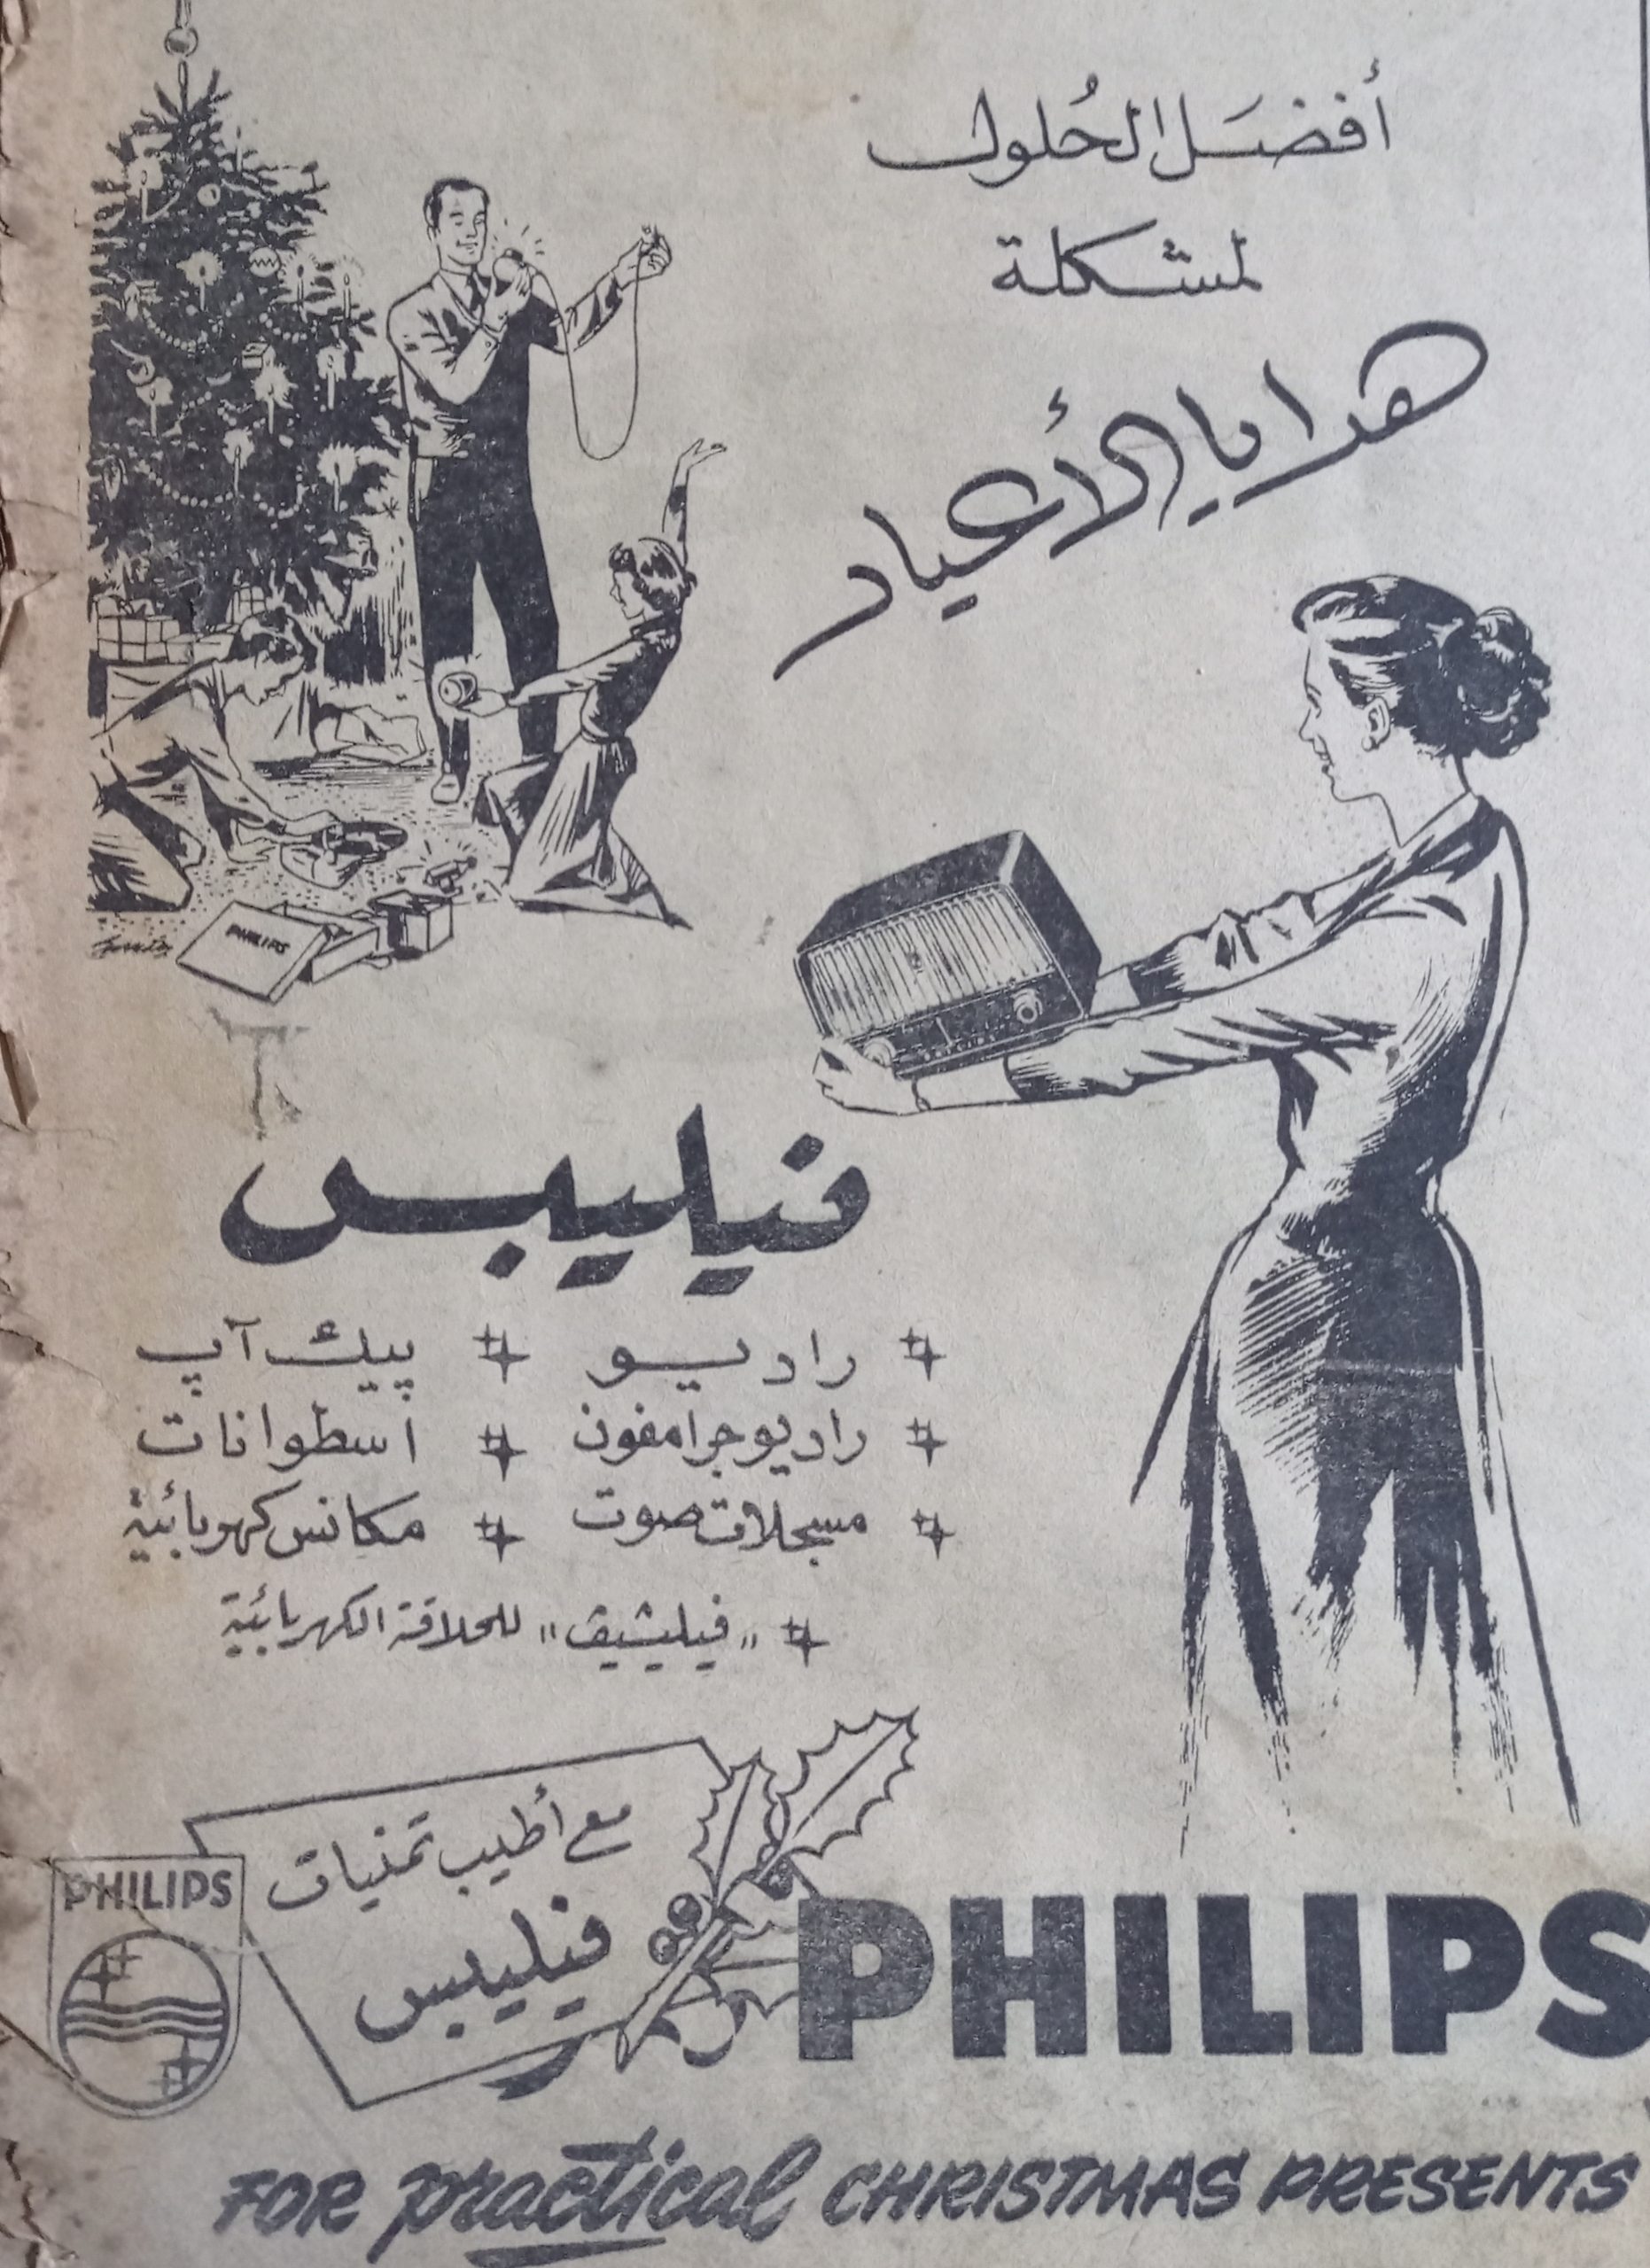 التاريخ السوري المعاصر - إعلان راديو فيليبس في حلب عام 1956